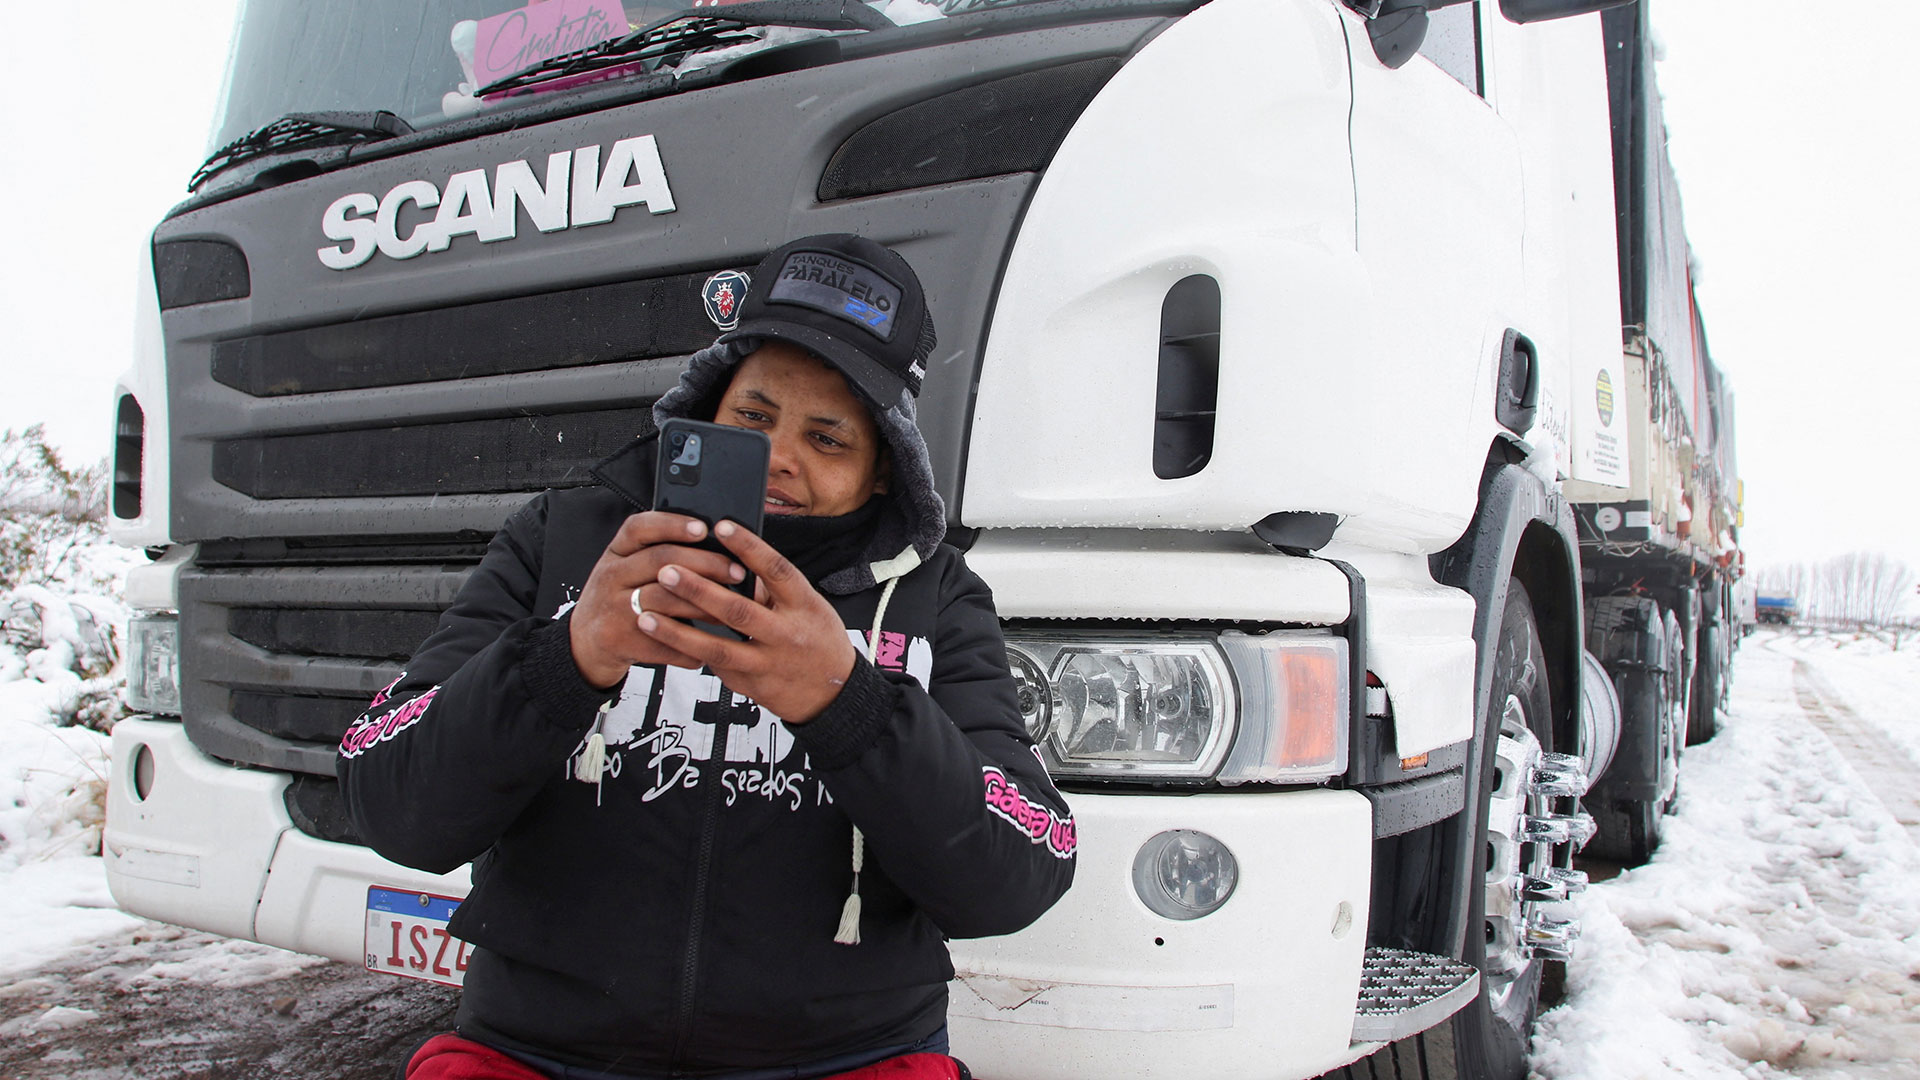 El camionero Dariane Loch Bolson, de 38 años, filma un video mientras está varado sobre la ruta 7 en Pedriel, Mendoza, para mandarle a su familia
